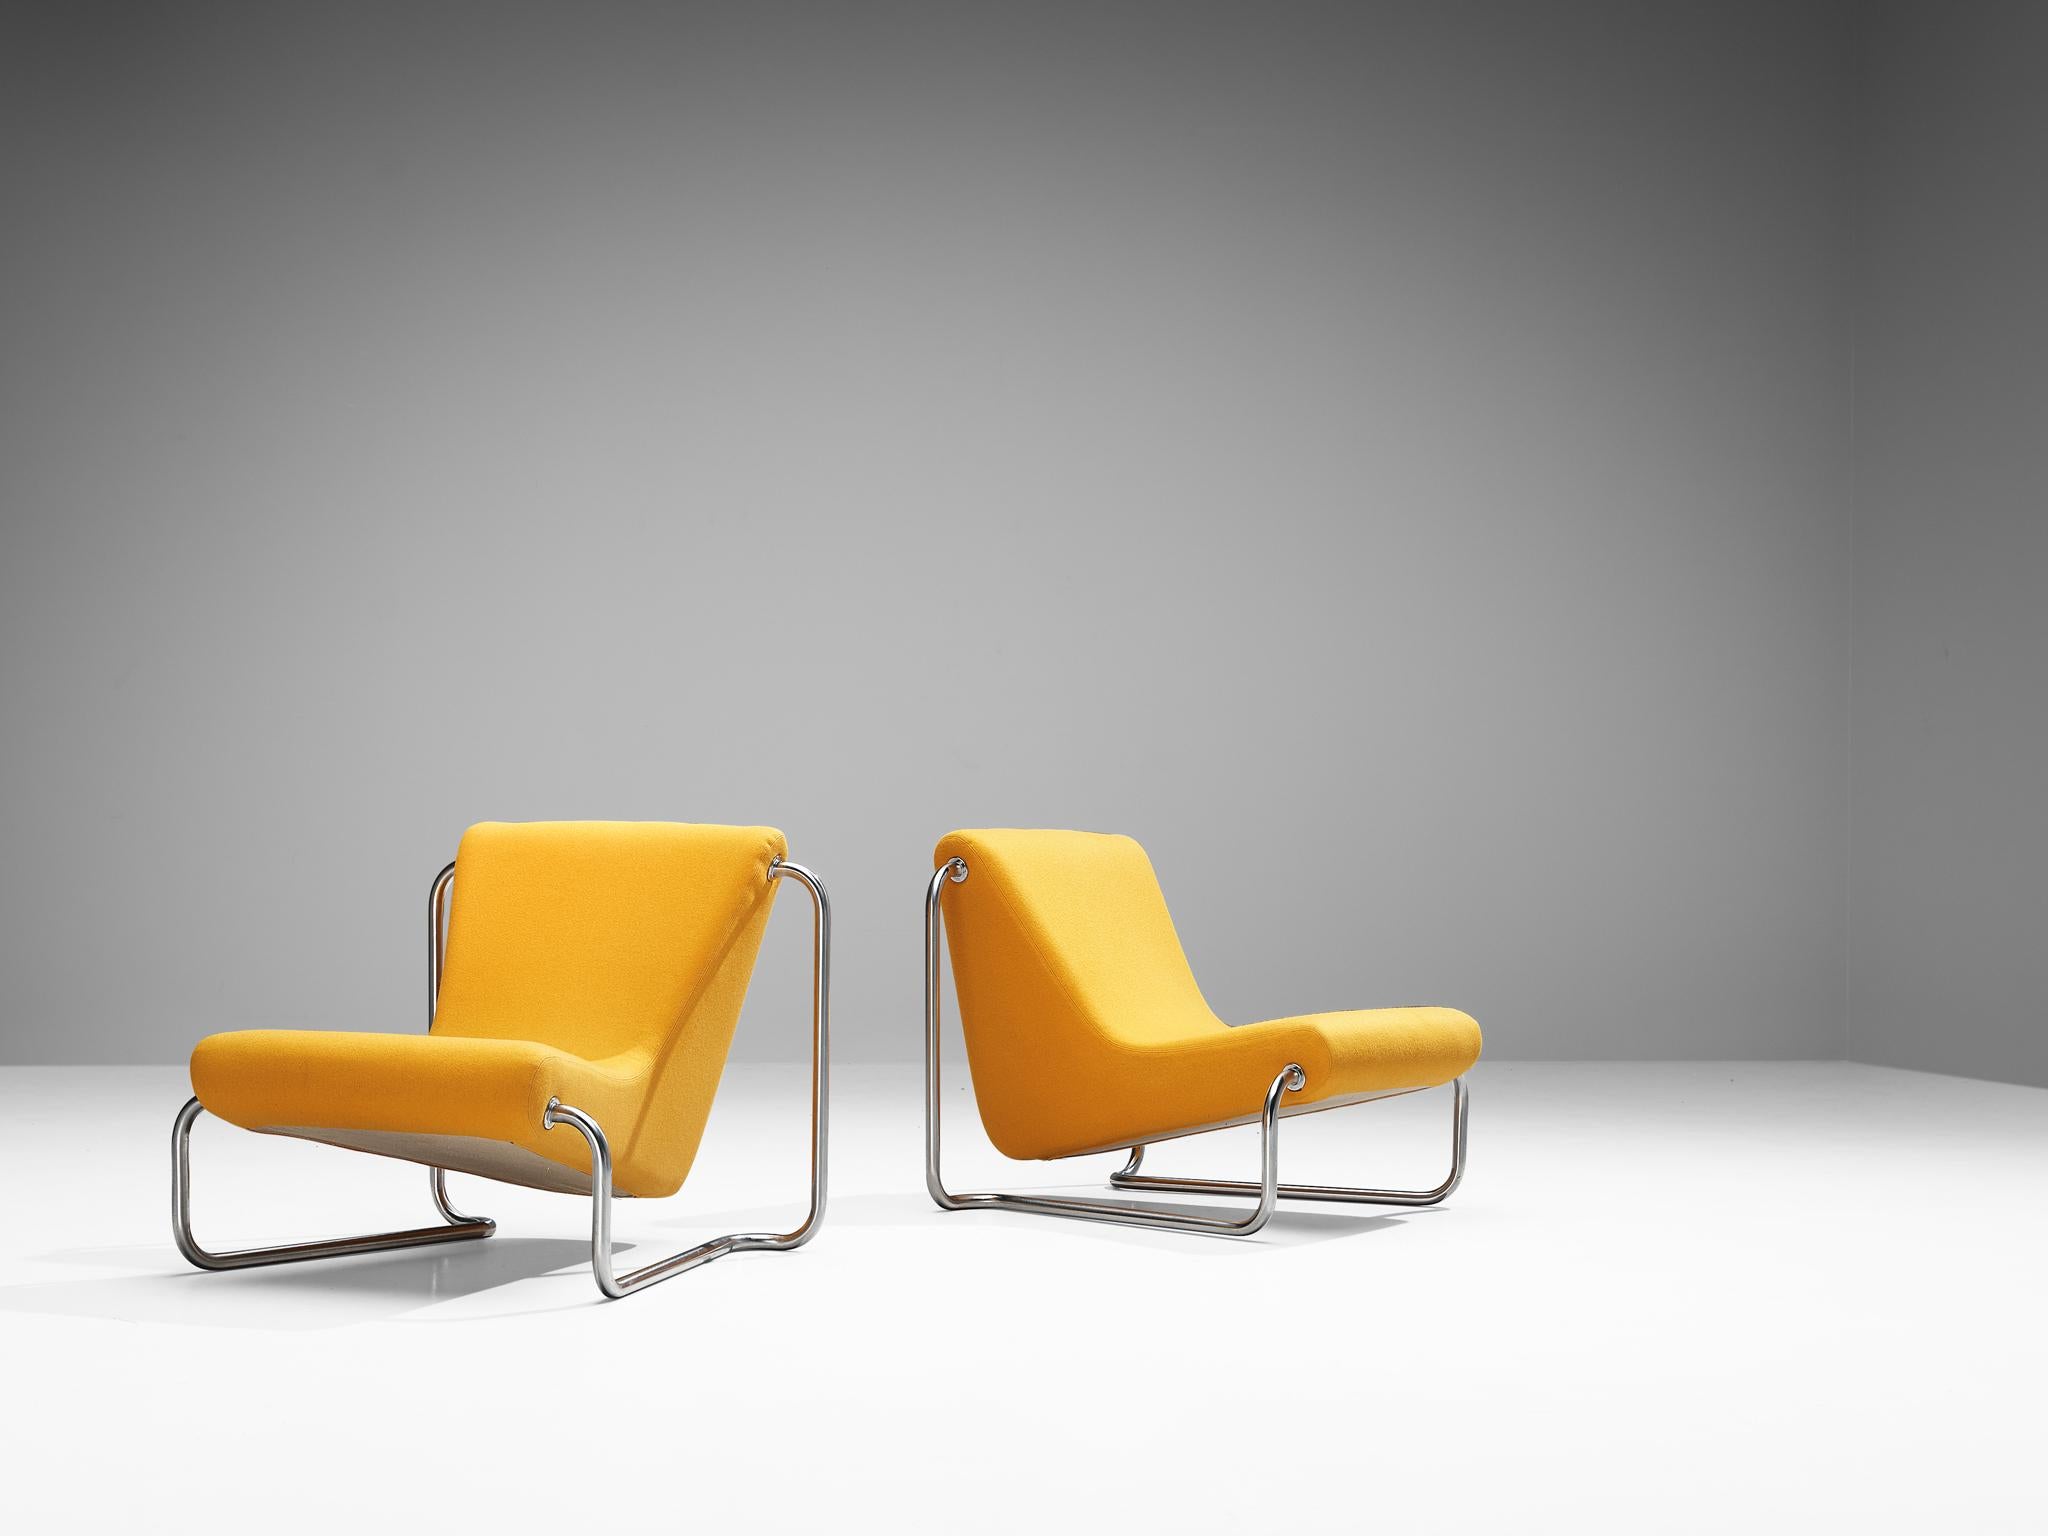 Luigi Colani pour Fritz Hansen, paire de fauteuils, acier chromé, tissu orange, Danemark, années 1970

Le designer industriel allemand Luigi Colani était réputé pour intégrer des formes organiques inspirées de la Nature dans des créations de